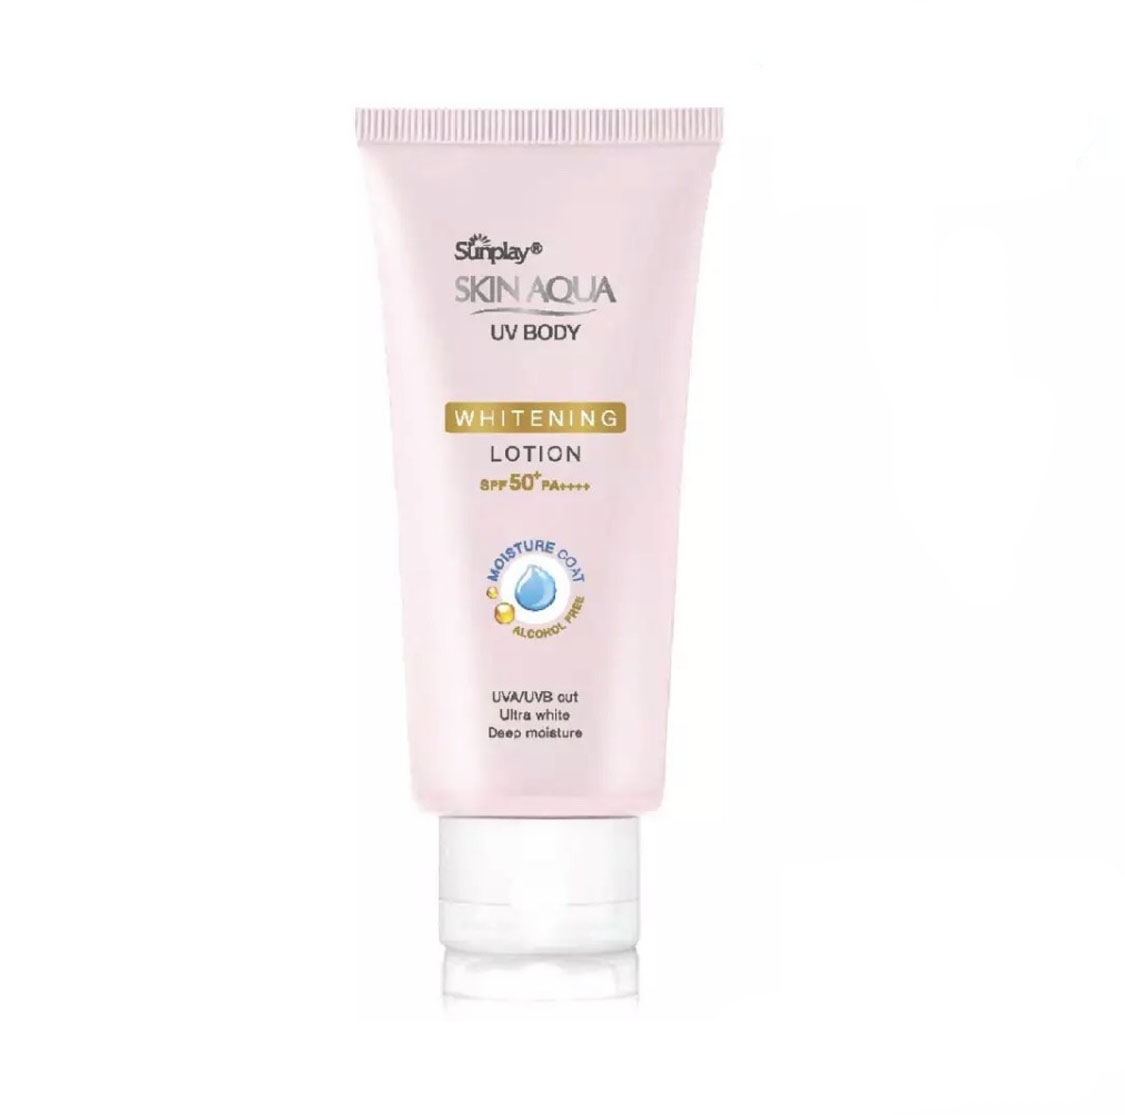 Kem chống nắng dưỡng thể trắng mịn Sunplay Skin Aqua Uv Body Whitening Lotion SPF 50+ PA++++